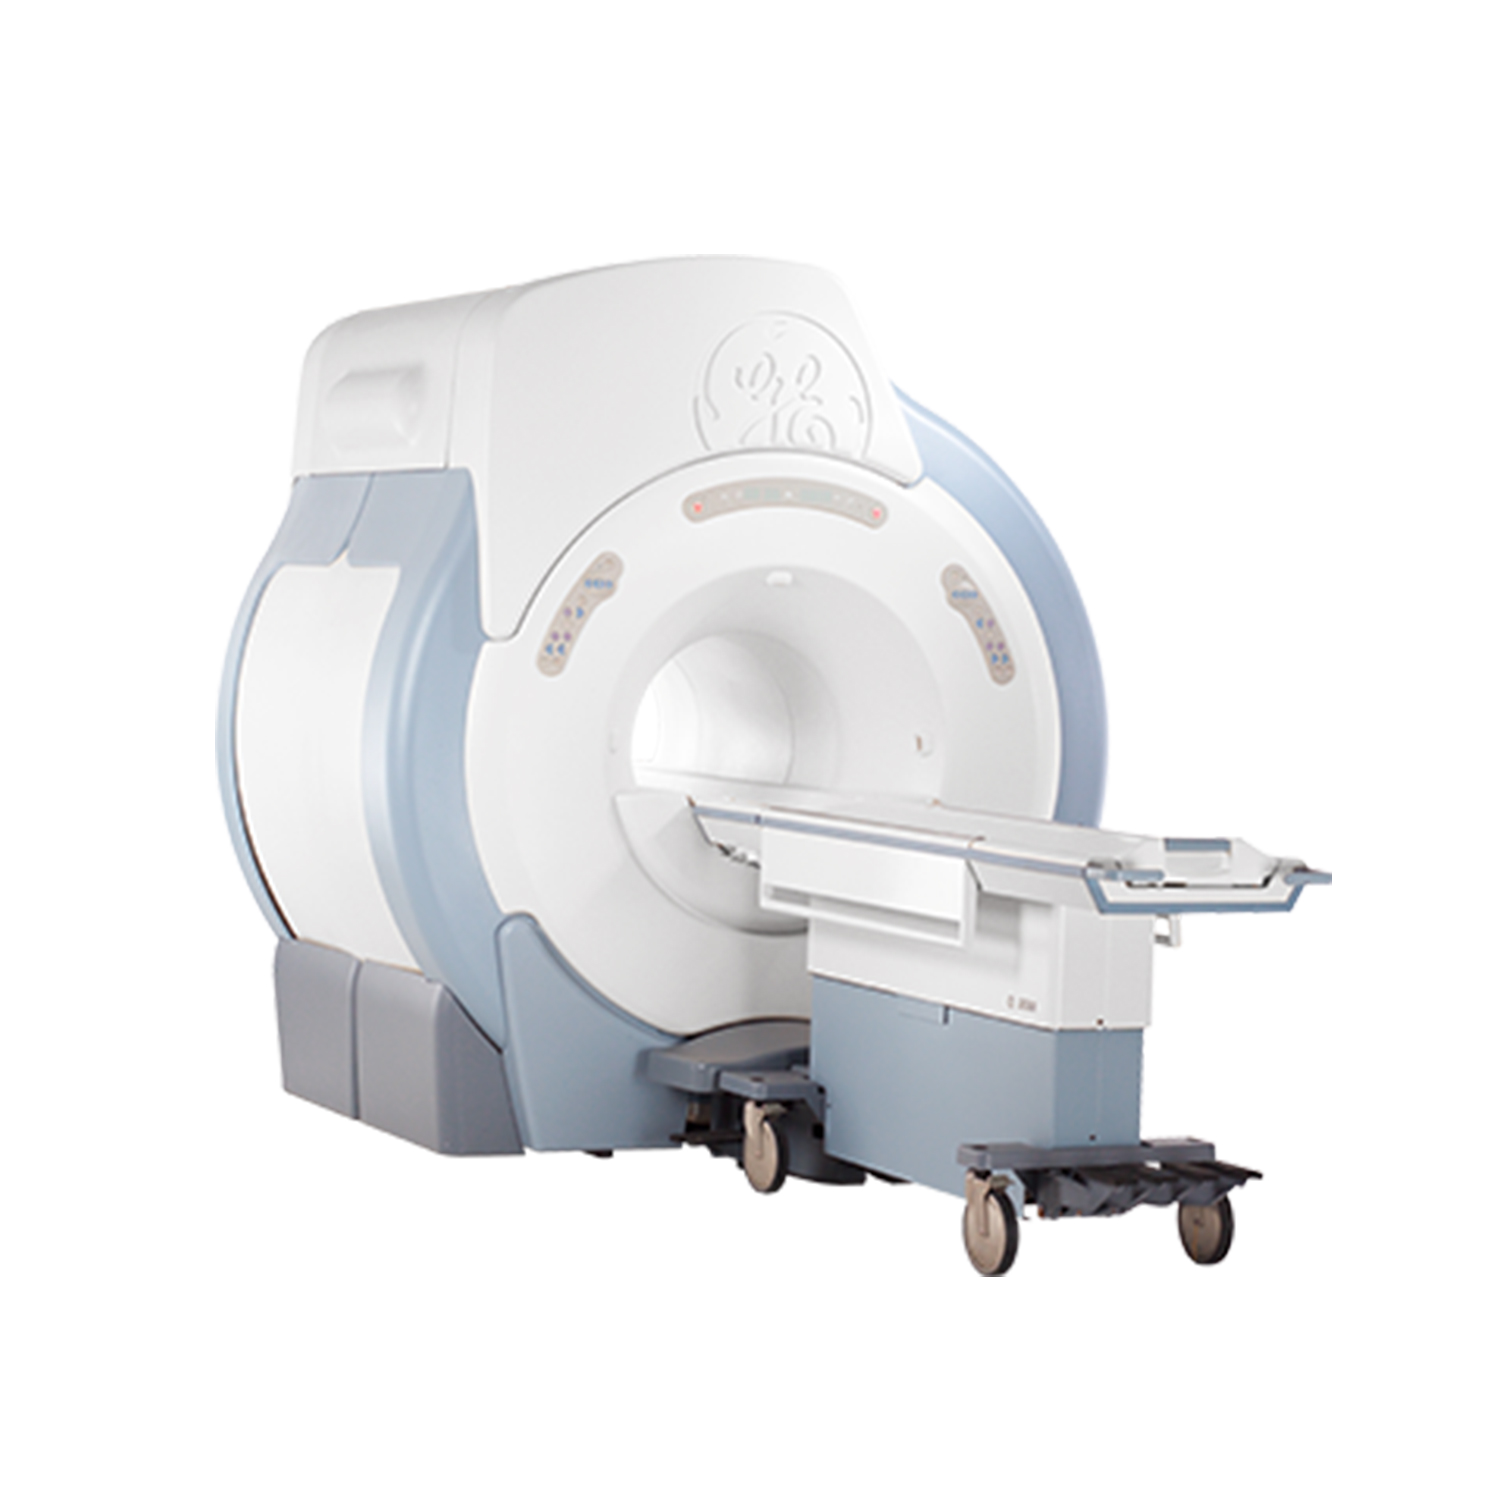 GE Signa HD 1.5T MRI System